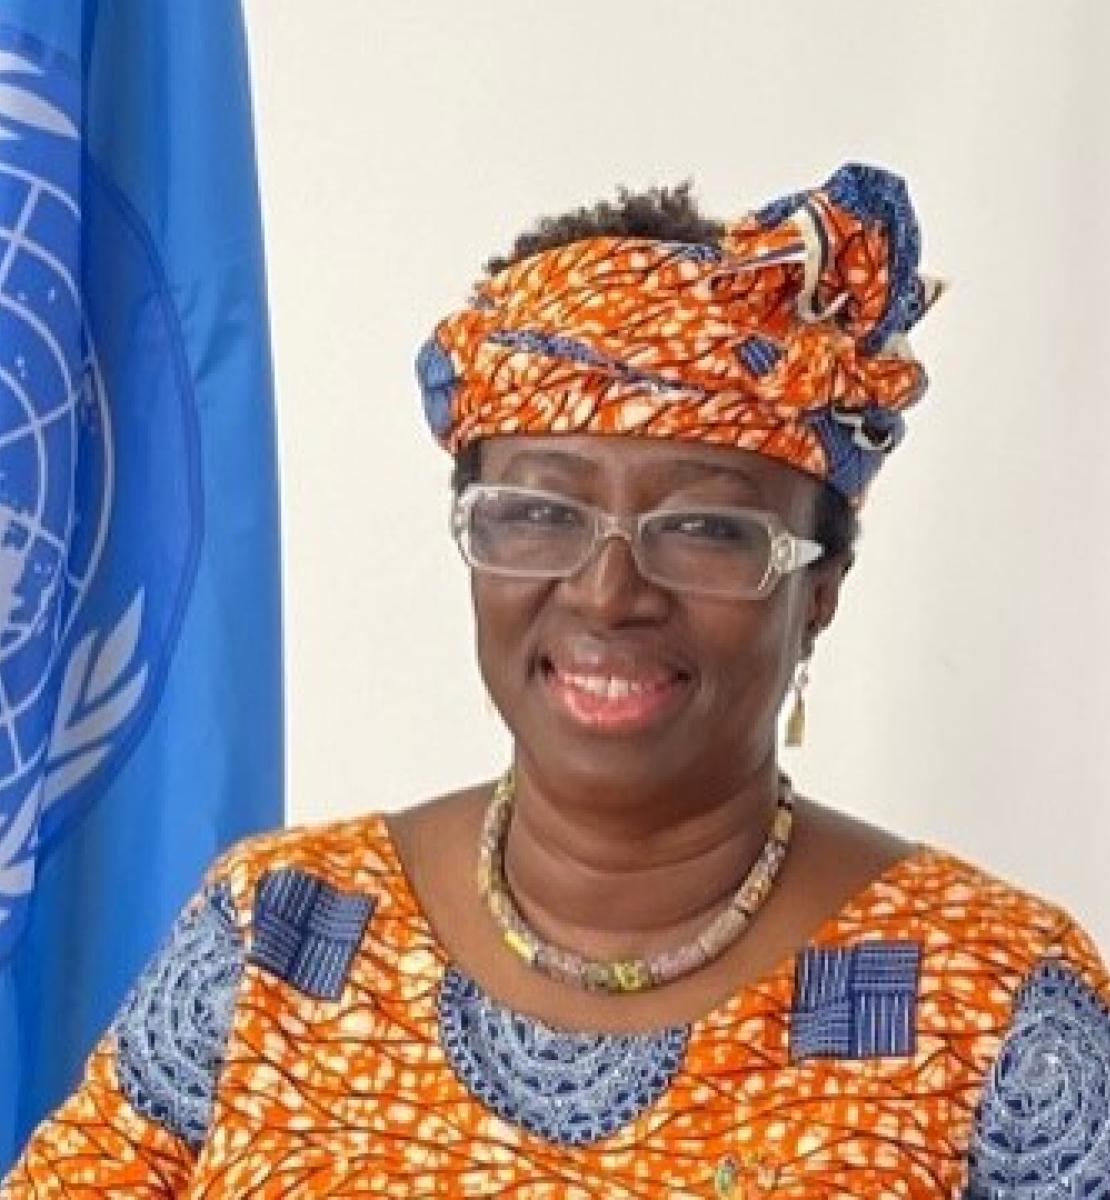 Rebecca Adda-Dontoh, de Ghana, es la nueva Coordinadora Residente de las Naciones Unidas en Malawi.